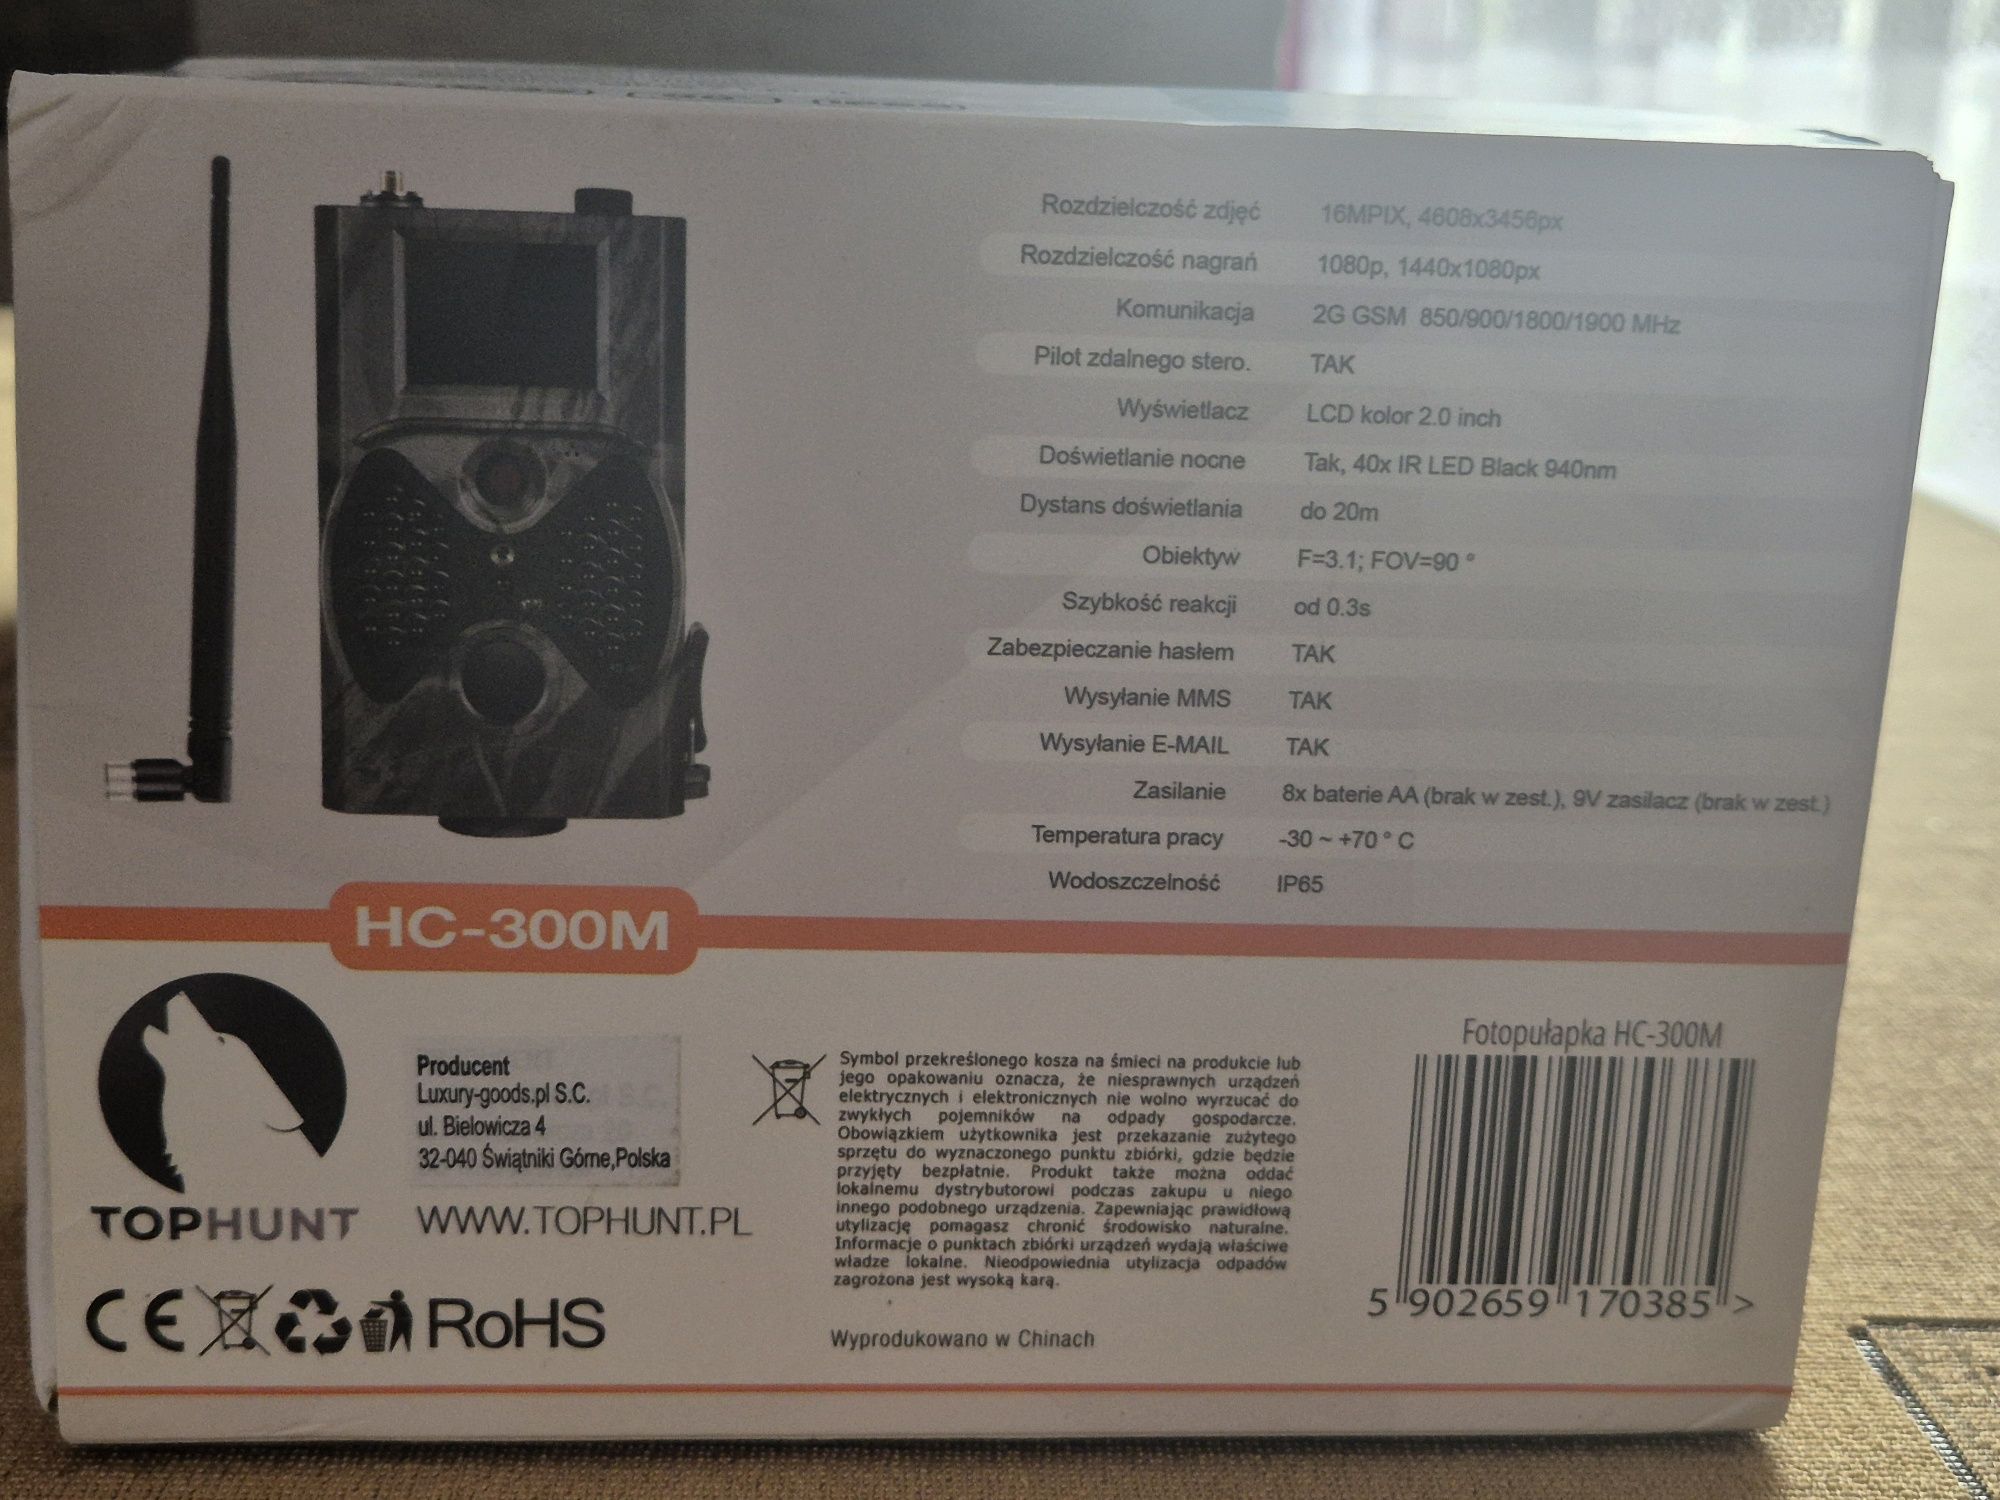 Fotopułapka Tophunt HC-300M SIM kamera leśna FULL HD sms mms